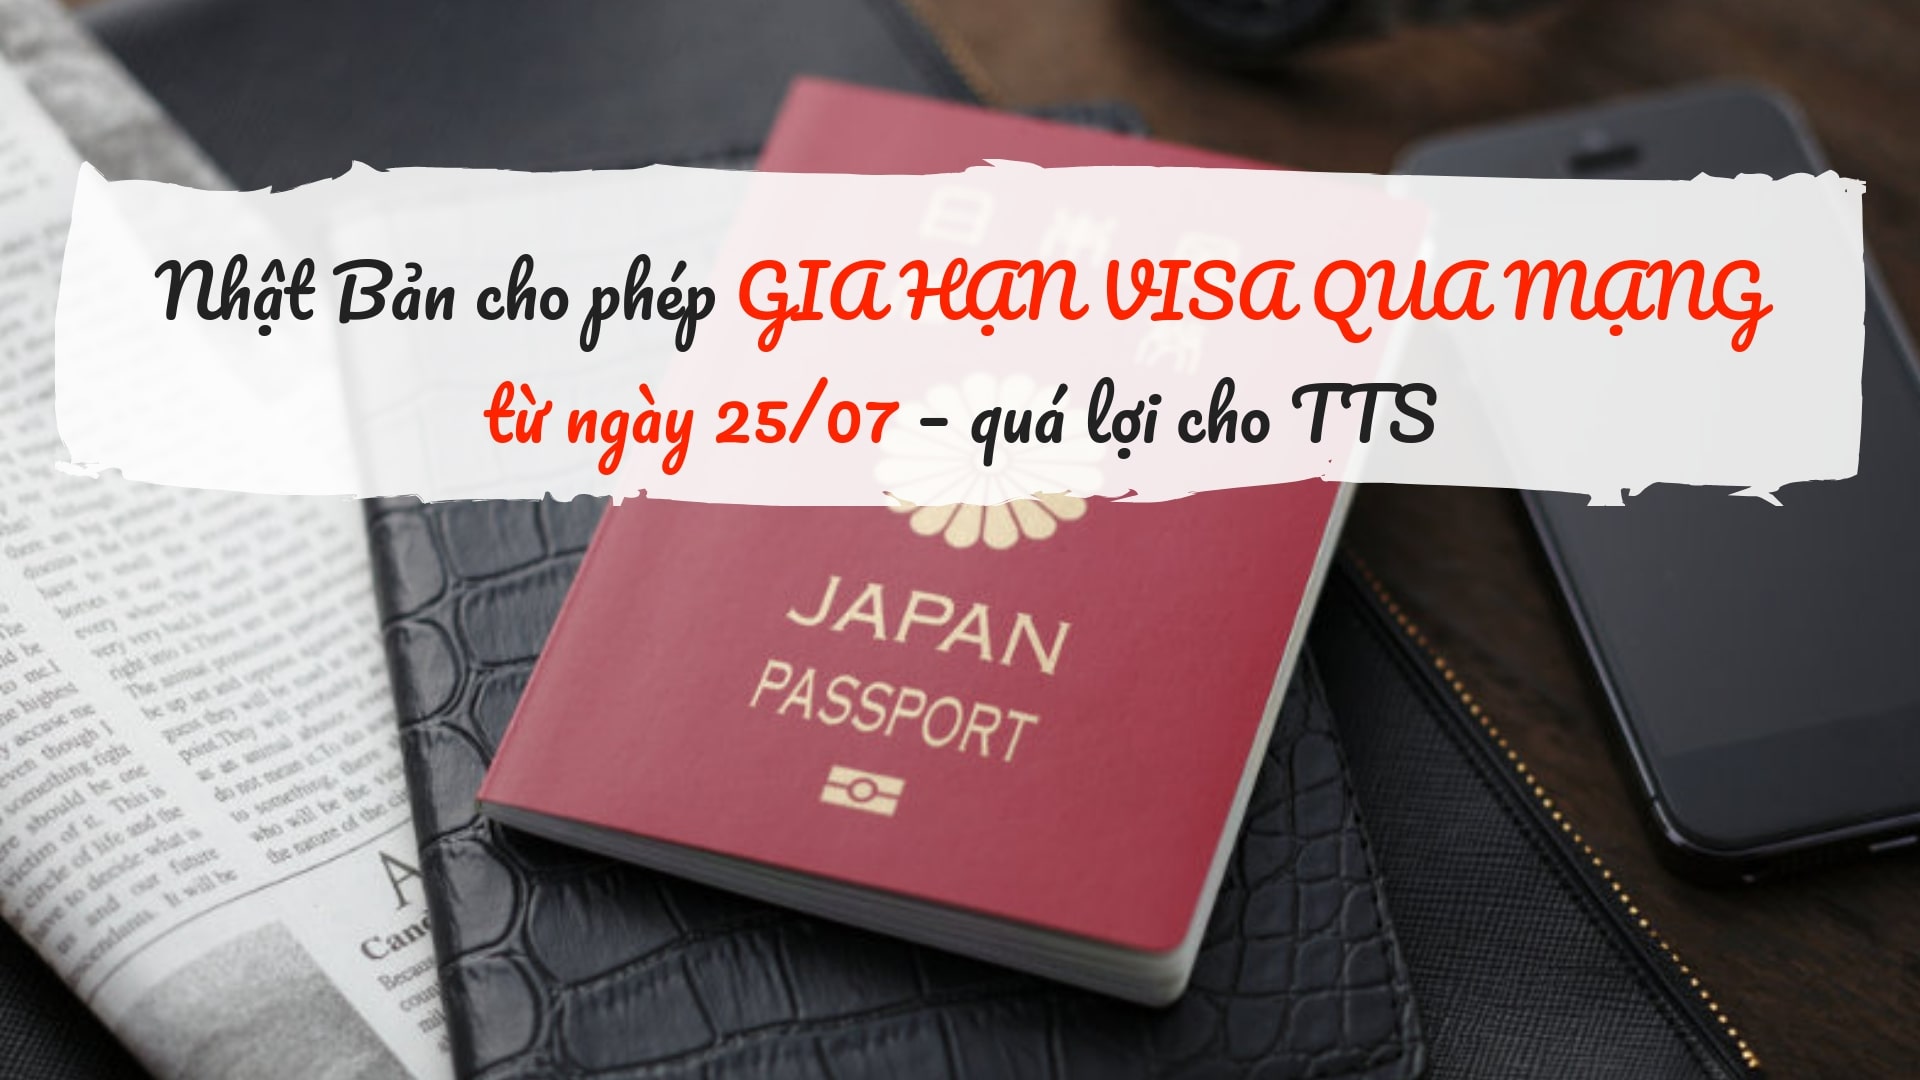 Nhật Bản cho phép GIA HẠN VISA QUA MẠNG từ ngày 25/07 – quá lợi cho TTS